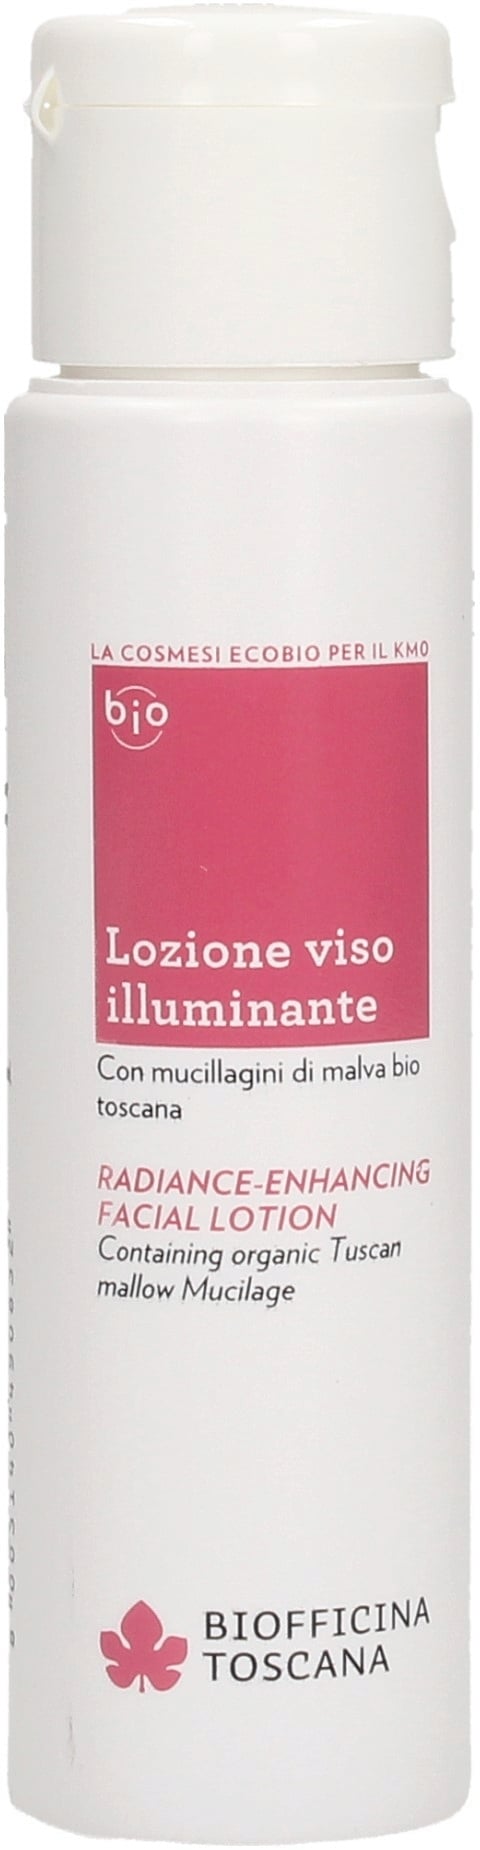 biofficina-toscana-lozione-viso-illuminante-60-ml-826499-it